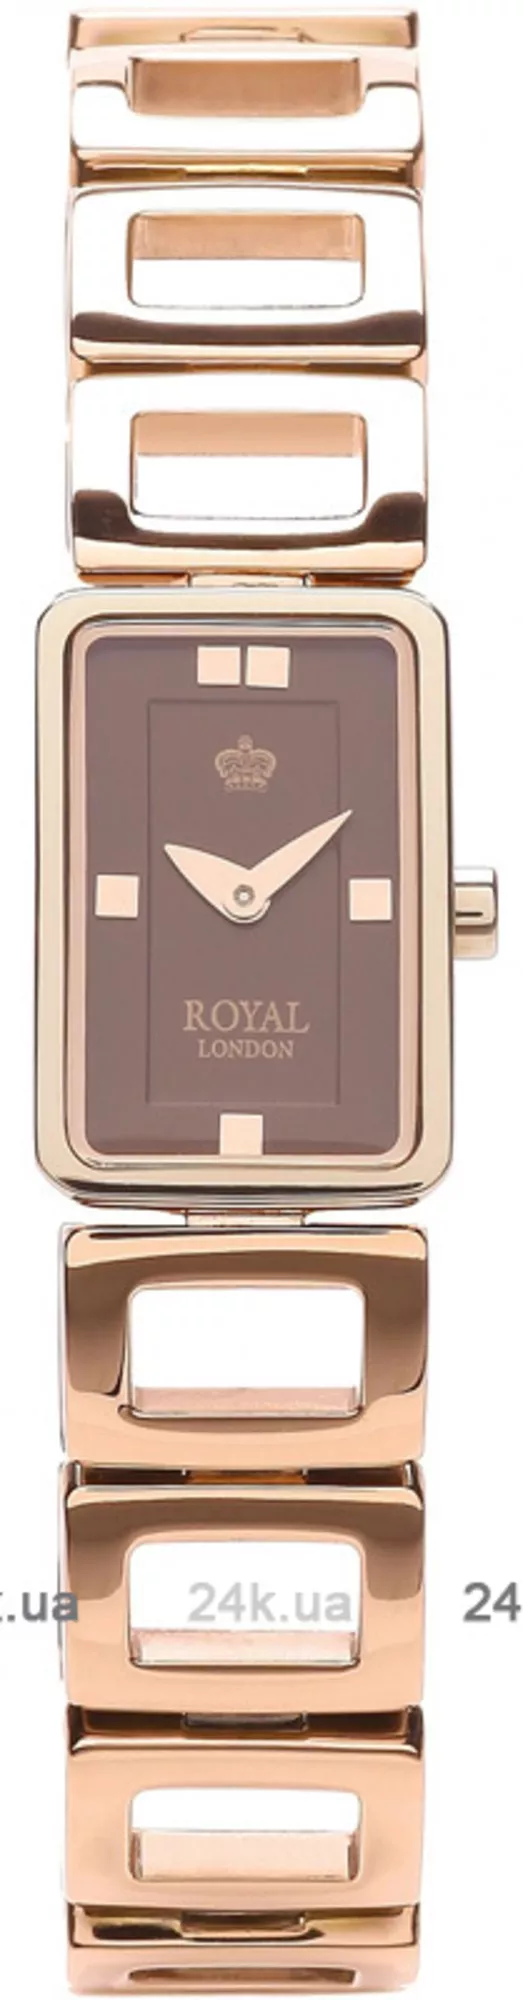 Часы Royal London 21166-03